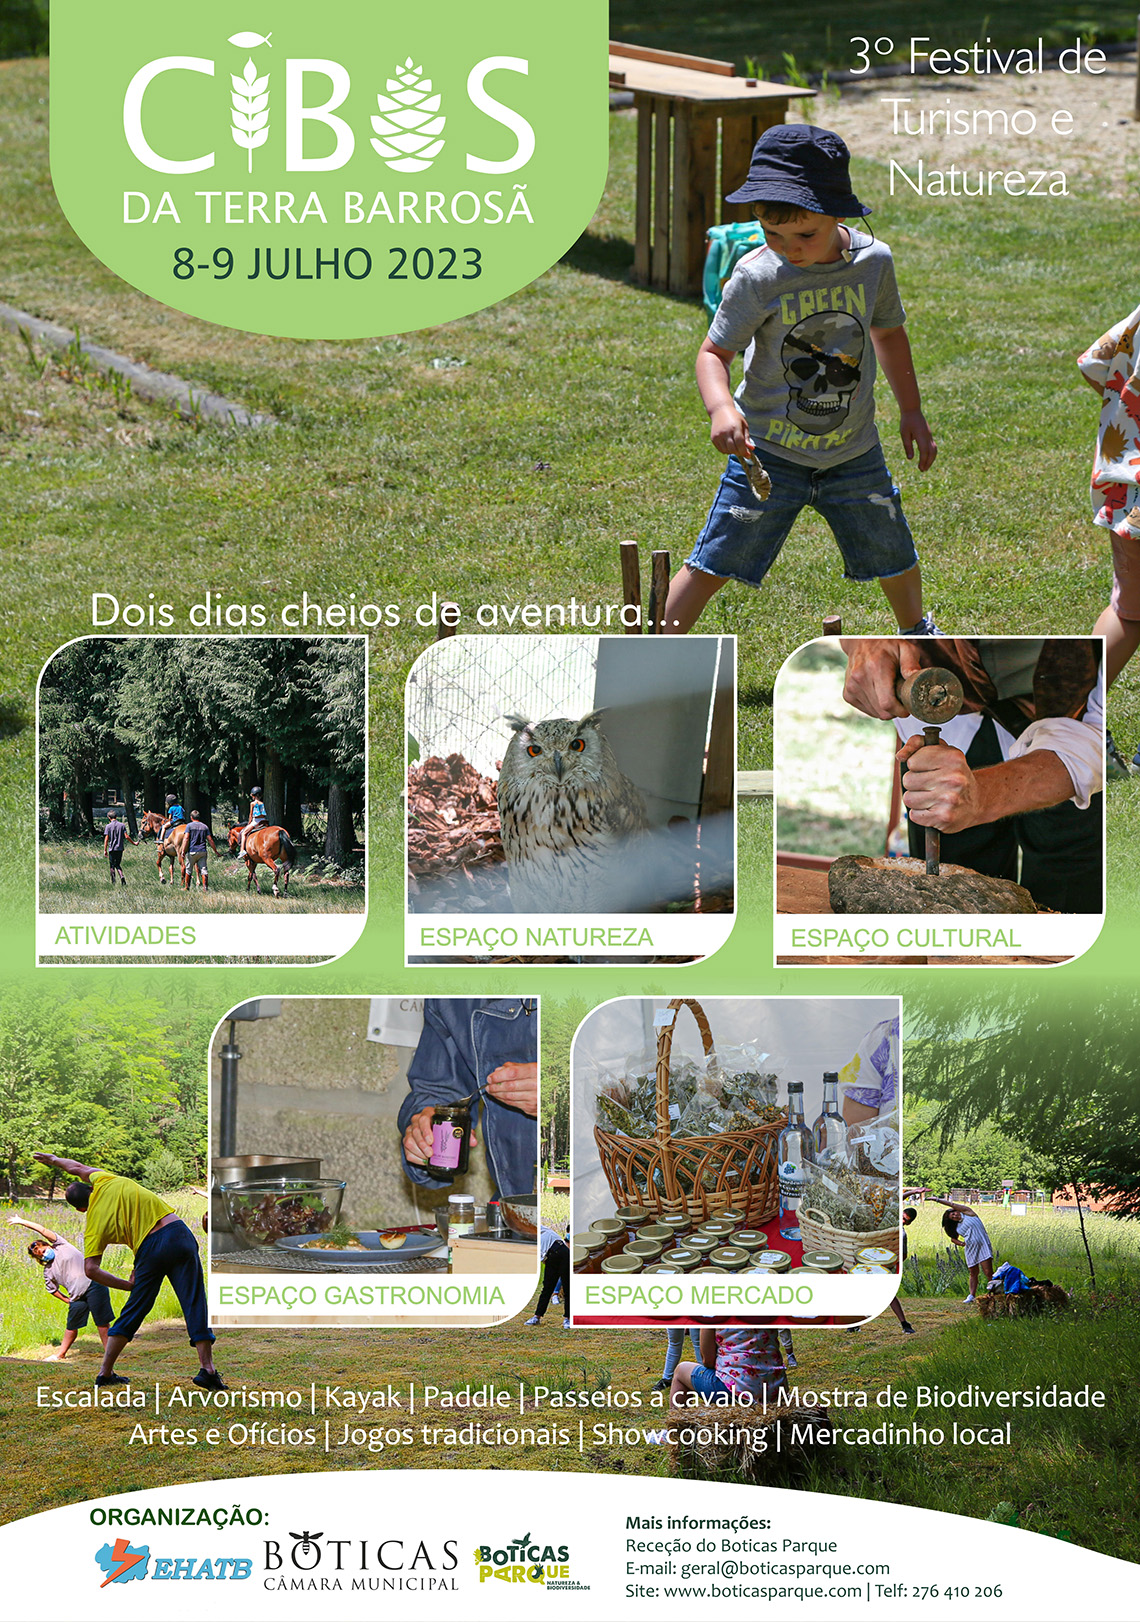 3º Festival de Turismo e Natureza - Cibos da Terra Barrosã